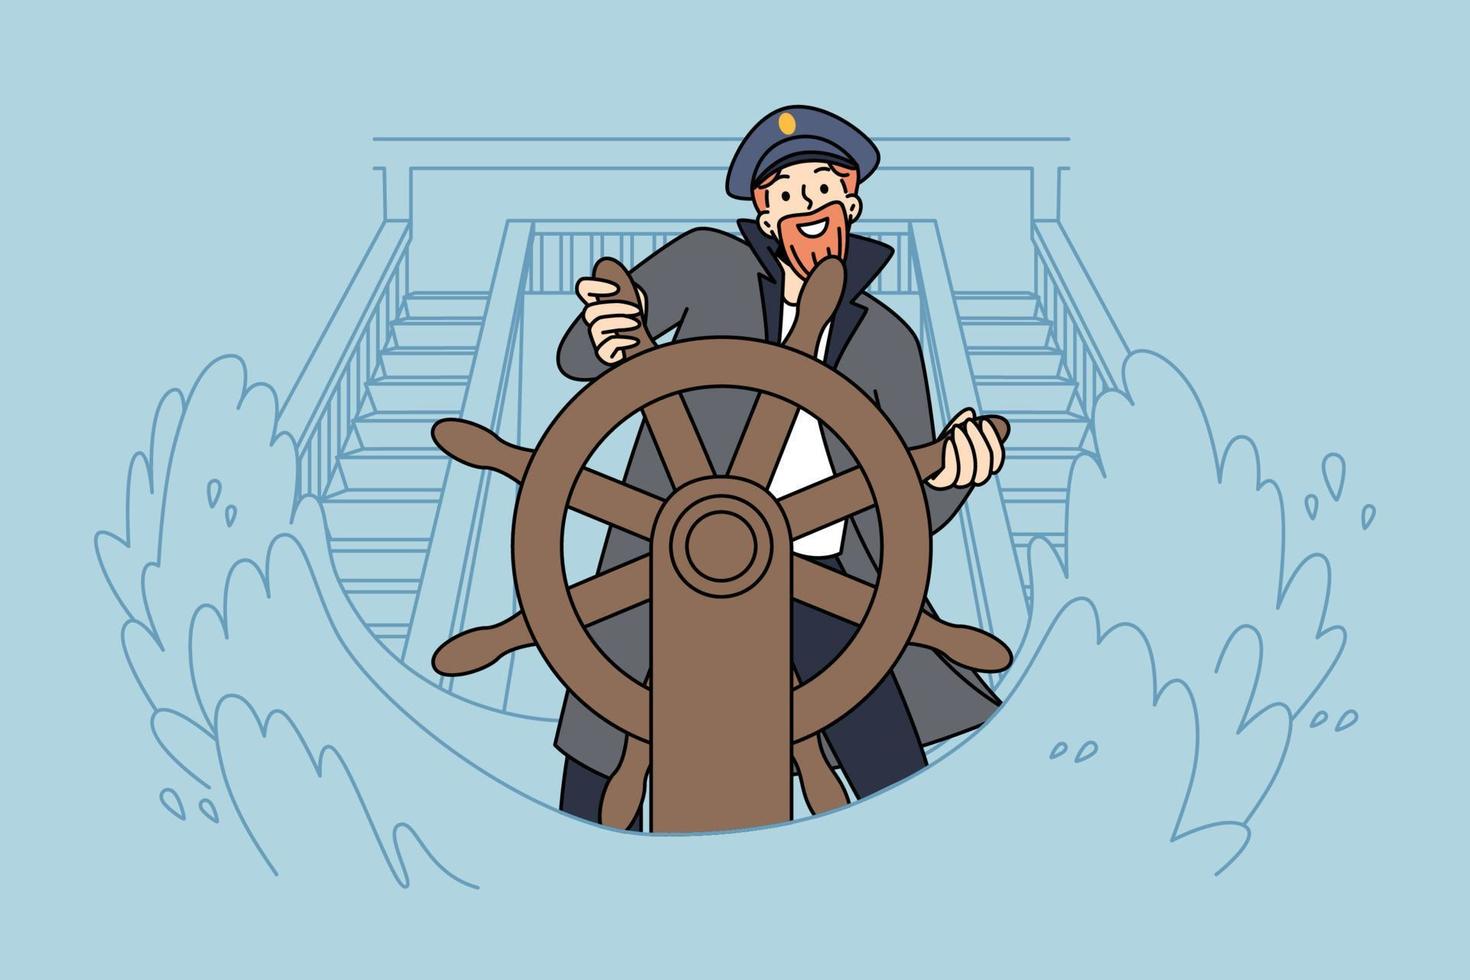 leende kapten stående på fartyg hjul under hav storm. Lycklig skeppare på båt roder på hav vågor. sjötid och marin liv. vektor illustration.